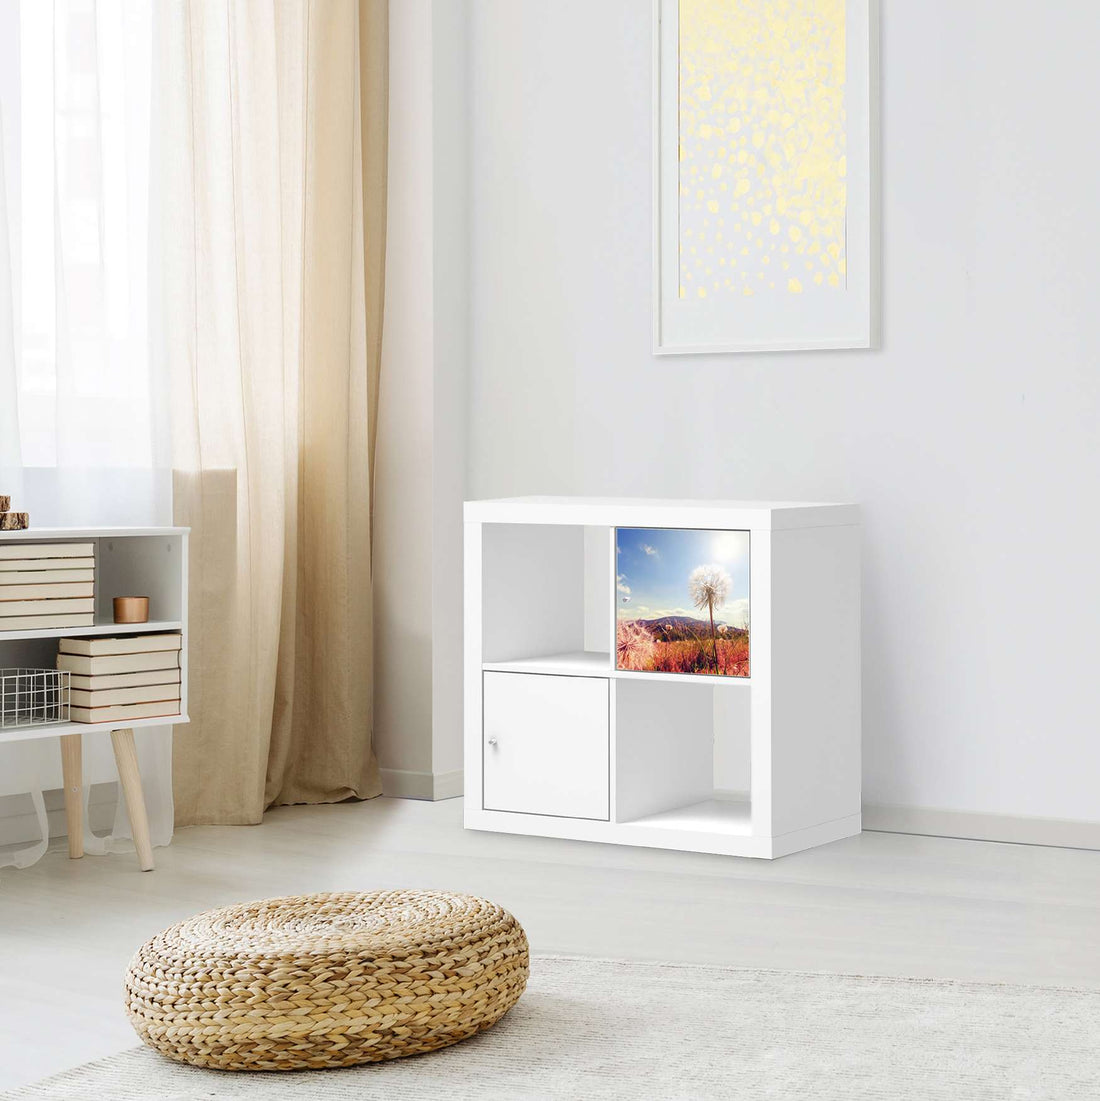 Selbstklebende Folie Dandelion - IKEA Kallax Regal 1 Türe - Wohnzimmer